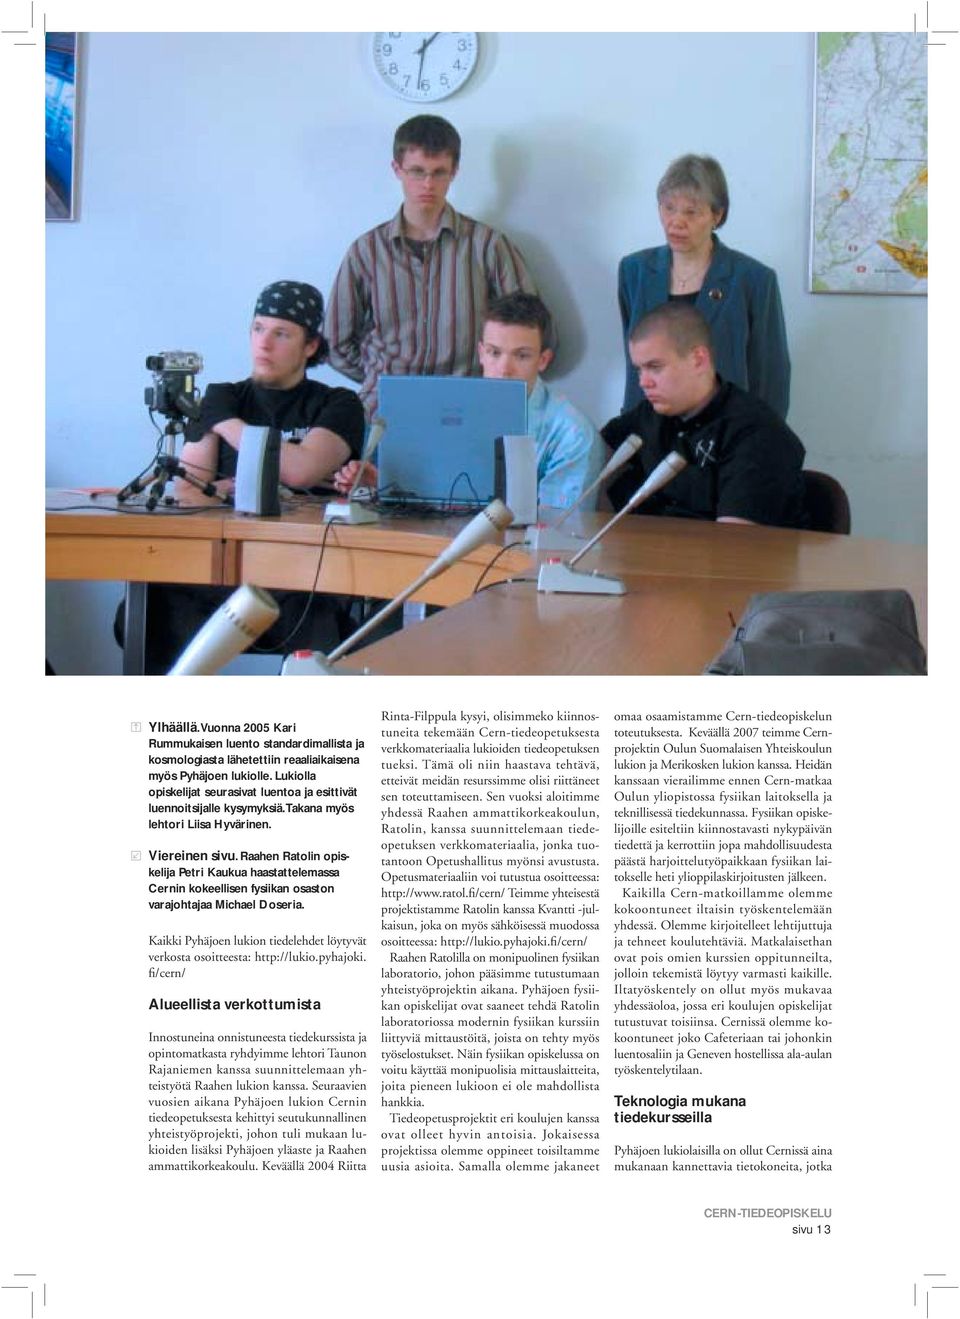 Raahen Ratolin opiskelija Petri Kaukua haastattelemassa Cernin kokeellisen fysiikan osaston varajohtajaa Michael Doseria.